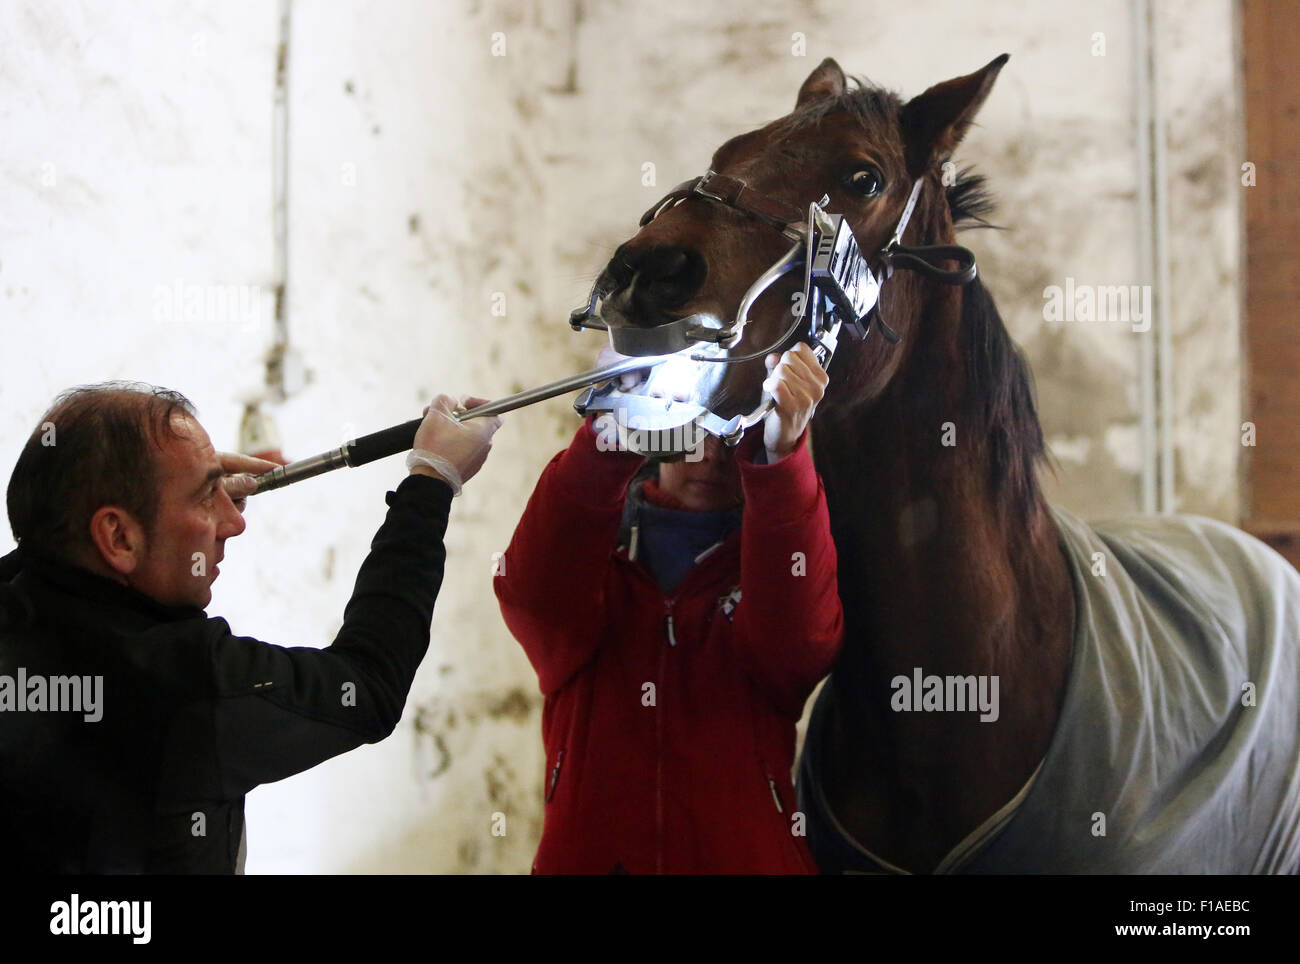 Koenigs Wusterhausen, Alemania, el caballo es tratada hasta los dientes Foto de stock